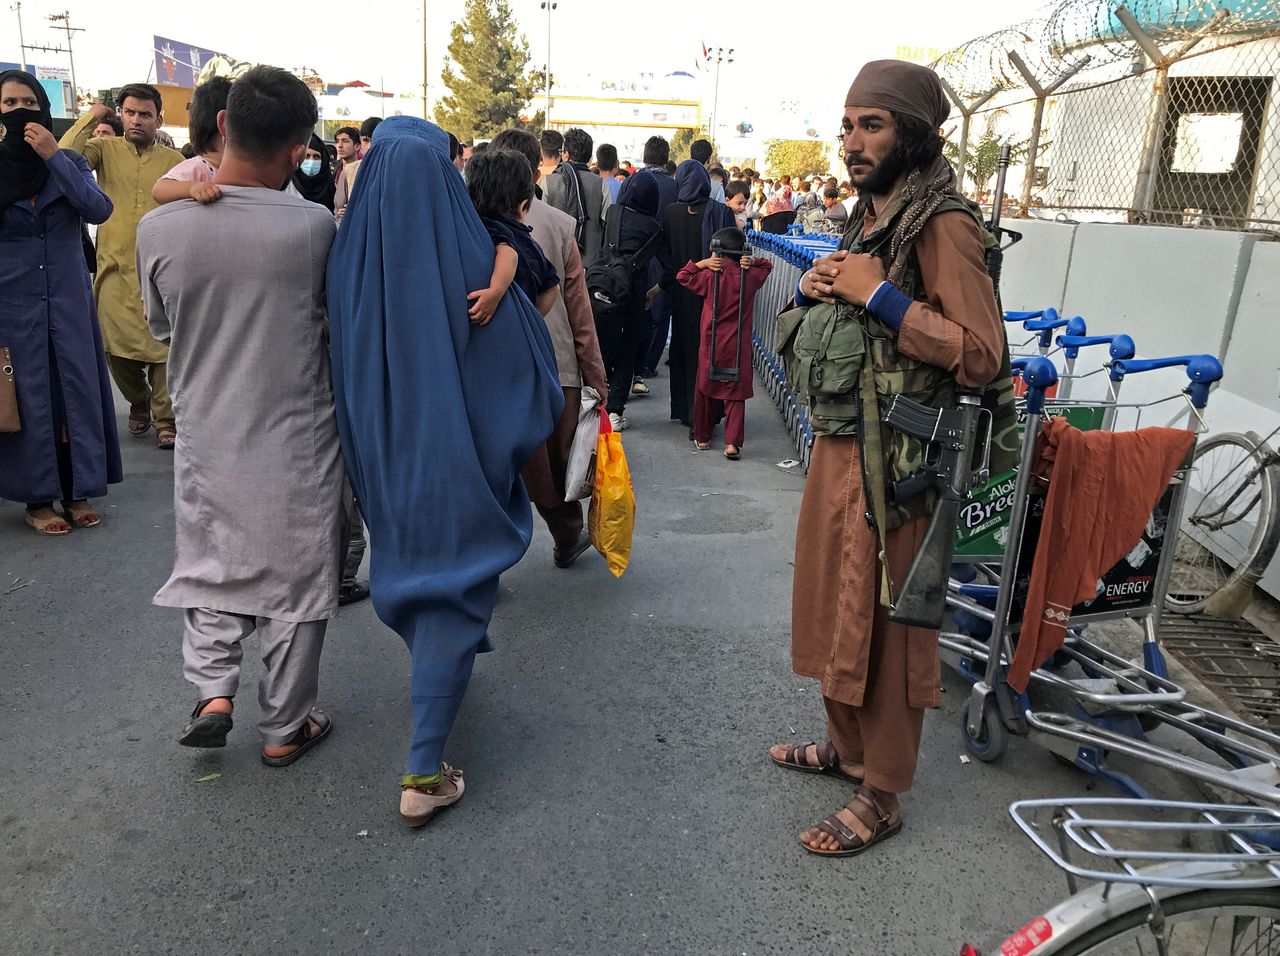 Un miembro de los talibanes monta guardia mientras la gente camina en la puerta de entrada del aeropuerto internacional Hamid Karzai en Kabul, Afganistán, el 16 de agosto de 2021.REUTERS/Stringer